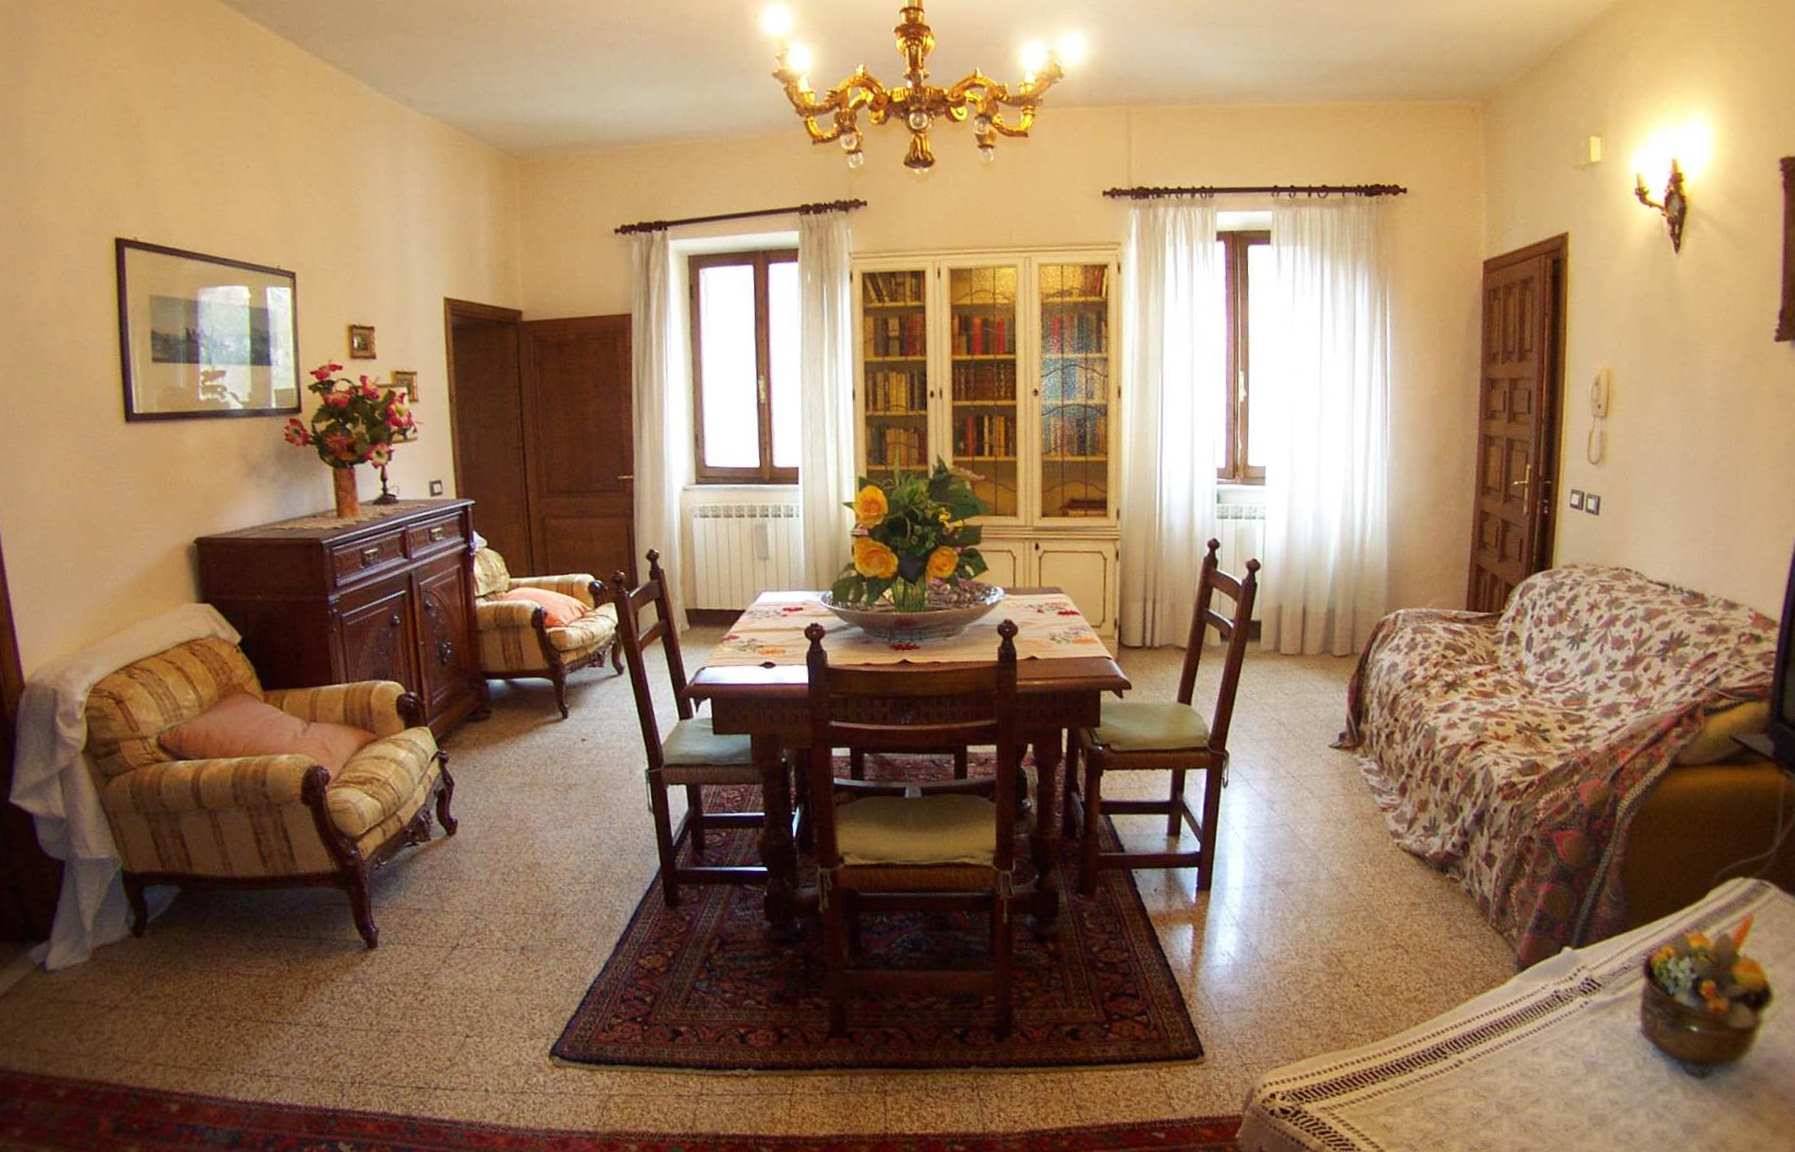 Appartamento in vendita a Gallicano, 6 locali, prezzo € 120.000 | PortaleAgenzieImmobiliari.it